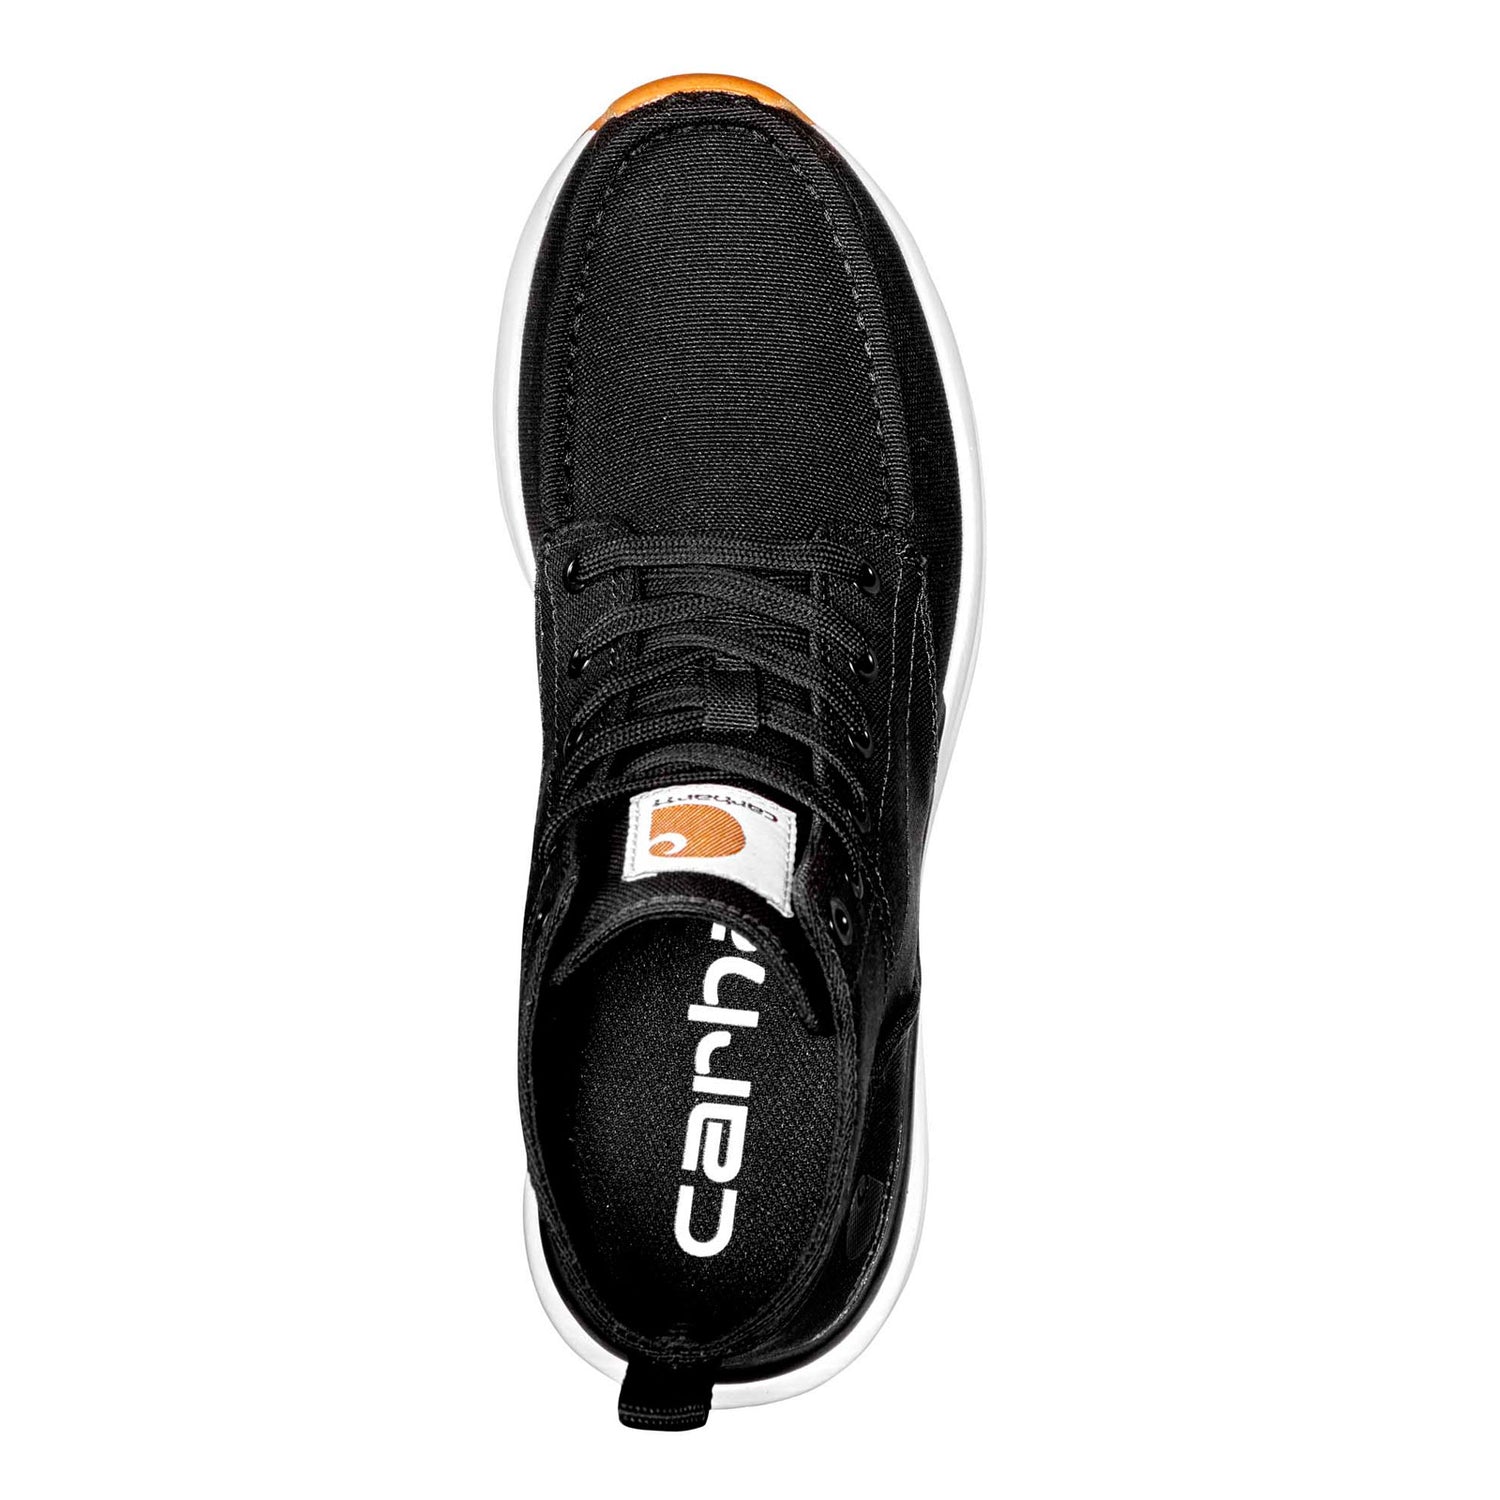 Peltz Shoes  Women's Carhartt Haslet Moc Toe Work Boot Black FS4071-W